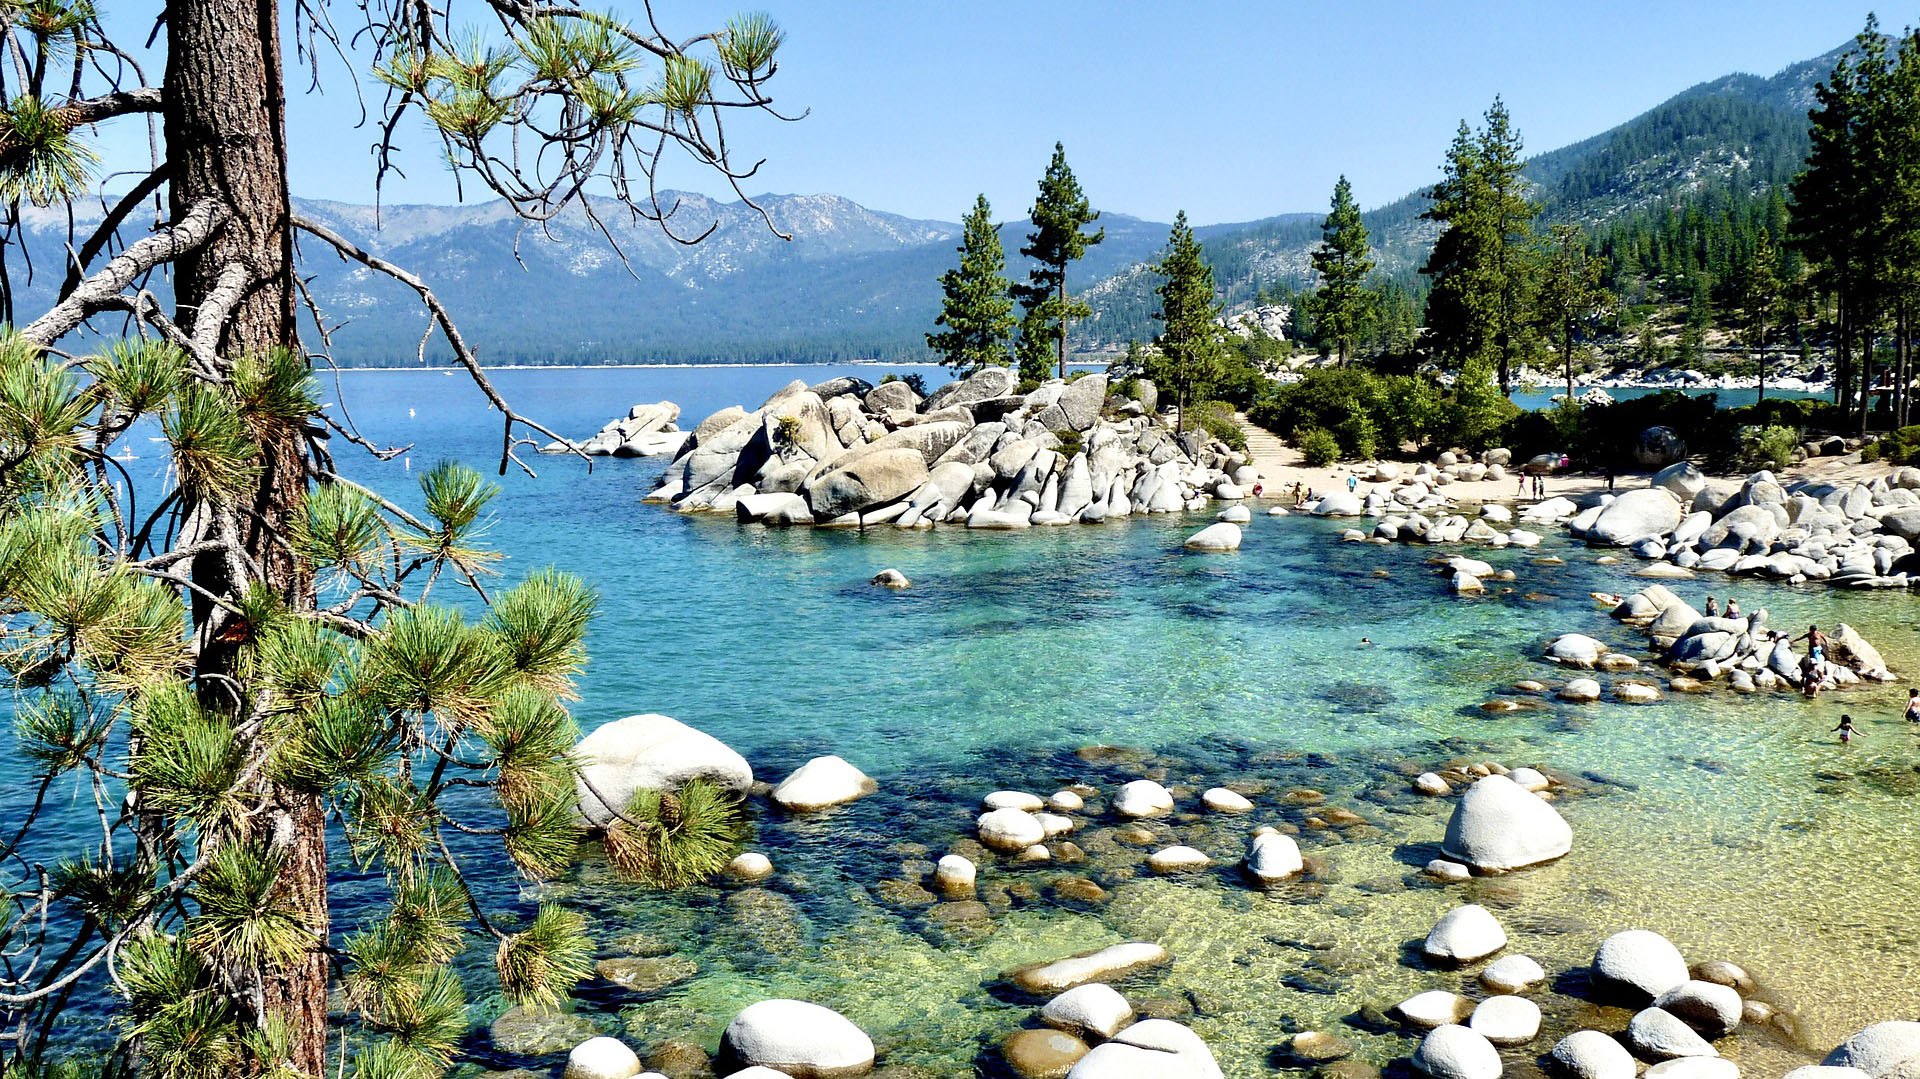 El lago Tahoe es un gran lago de agua dulce en la cordillera Sierra Nevada, que se extiende por la frontera de California y Nevada (Turismo Lake Tahoe)